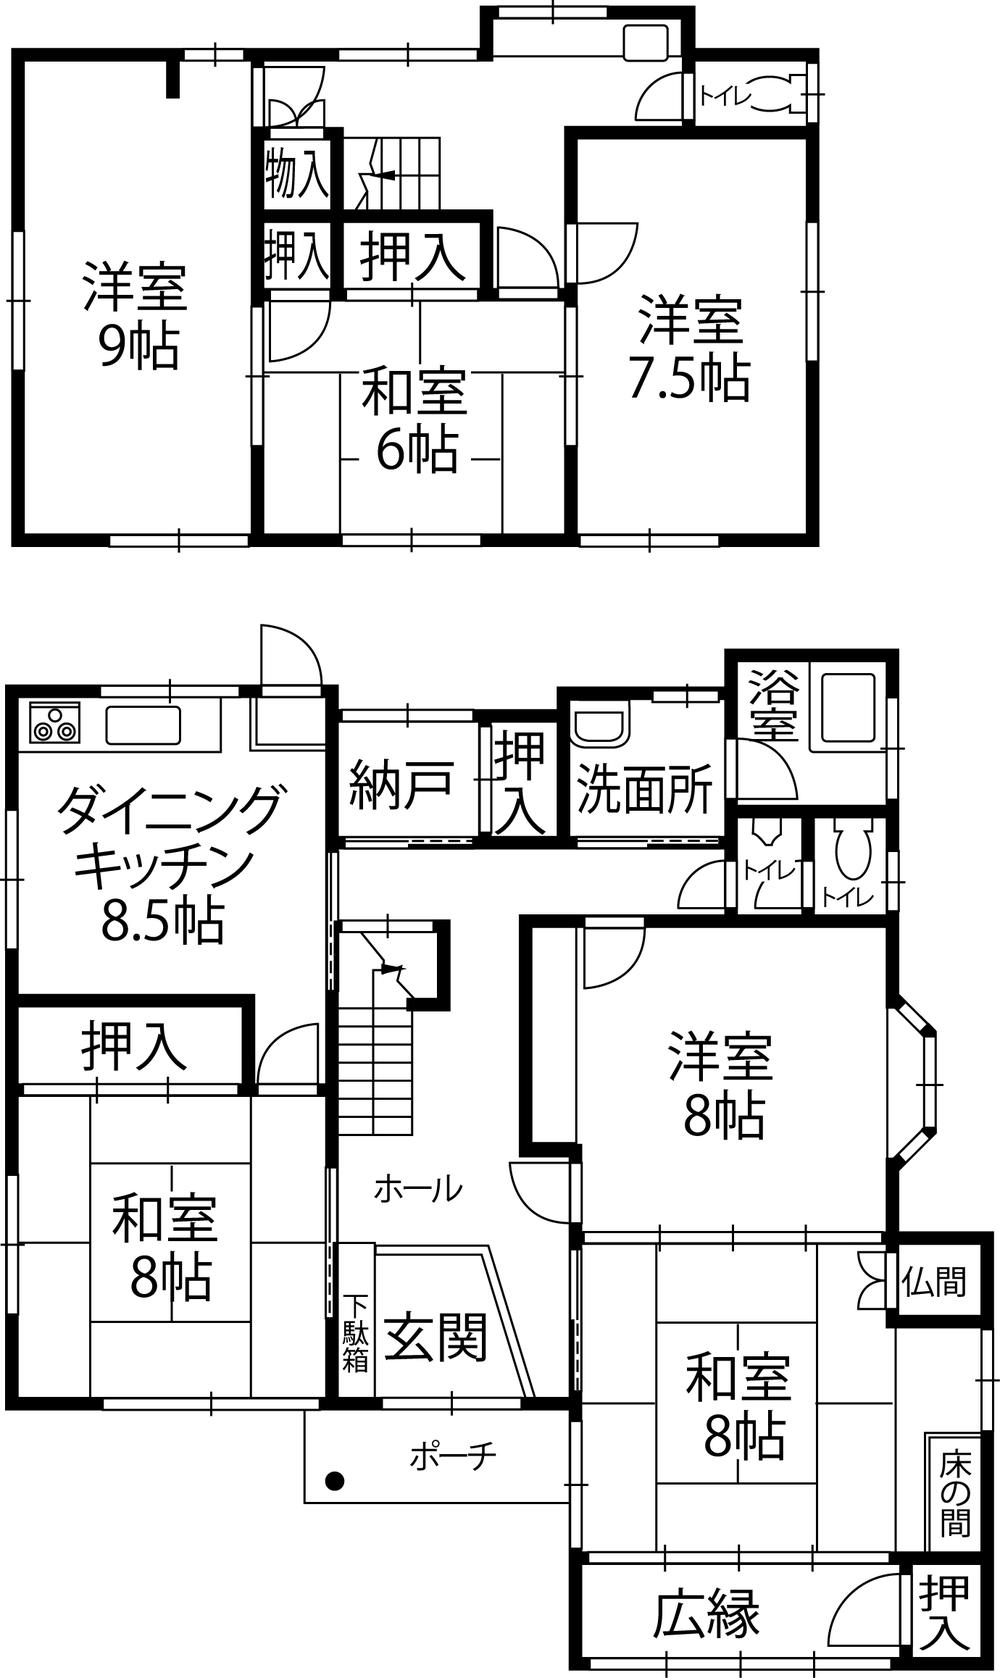 Floor plan. 25,800,000 yen, 6DK, Land area 266.92 sq m , Building area 158.29 sq m